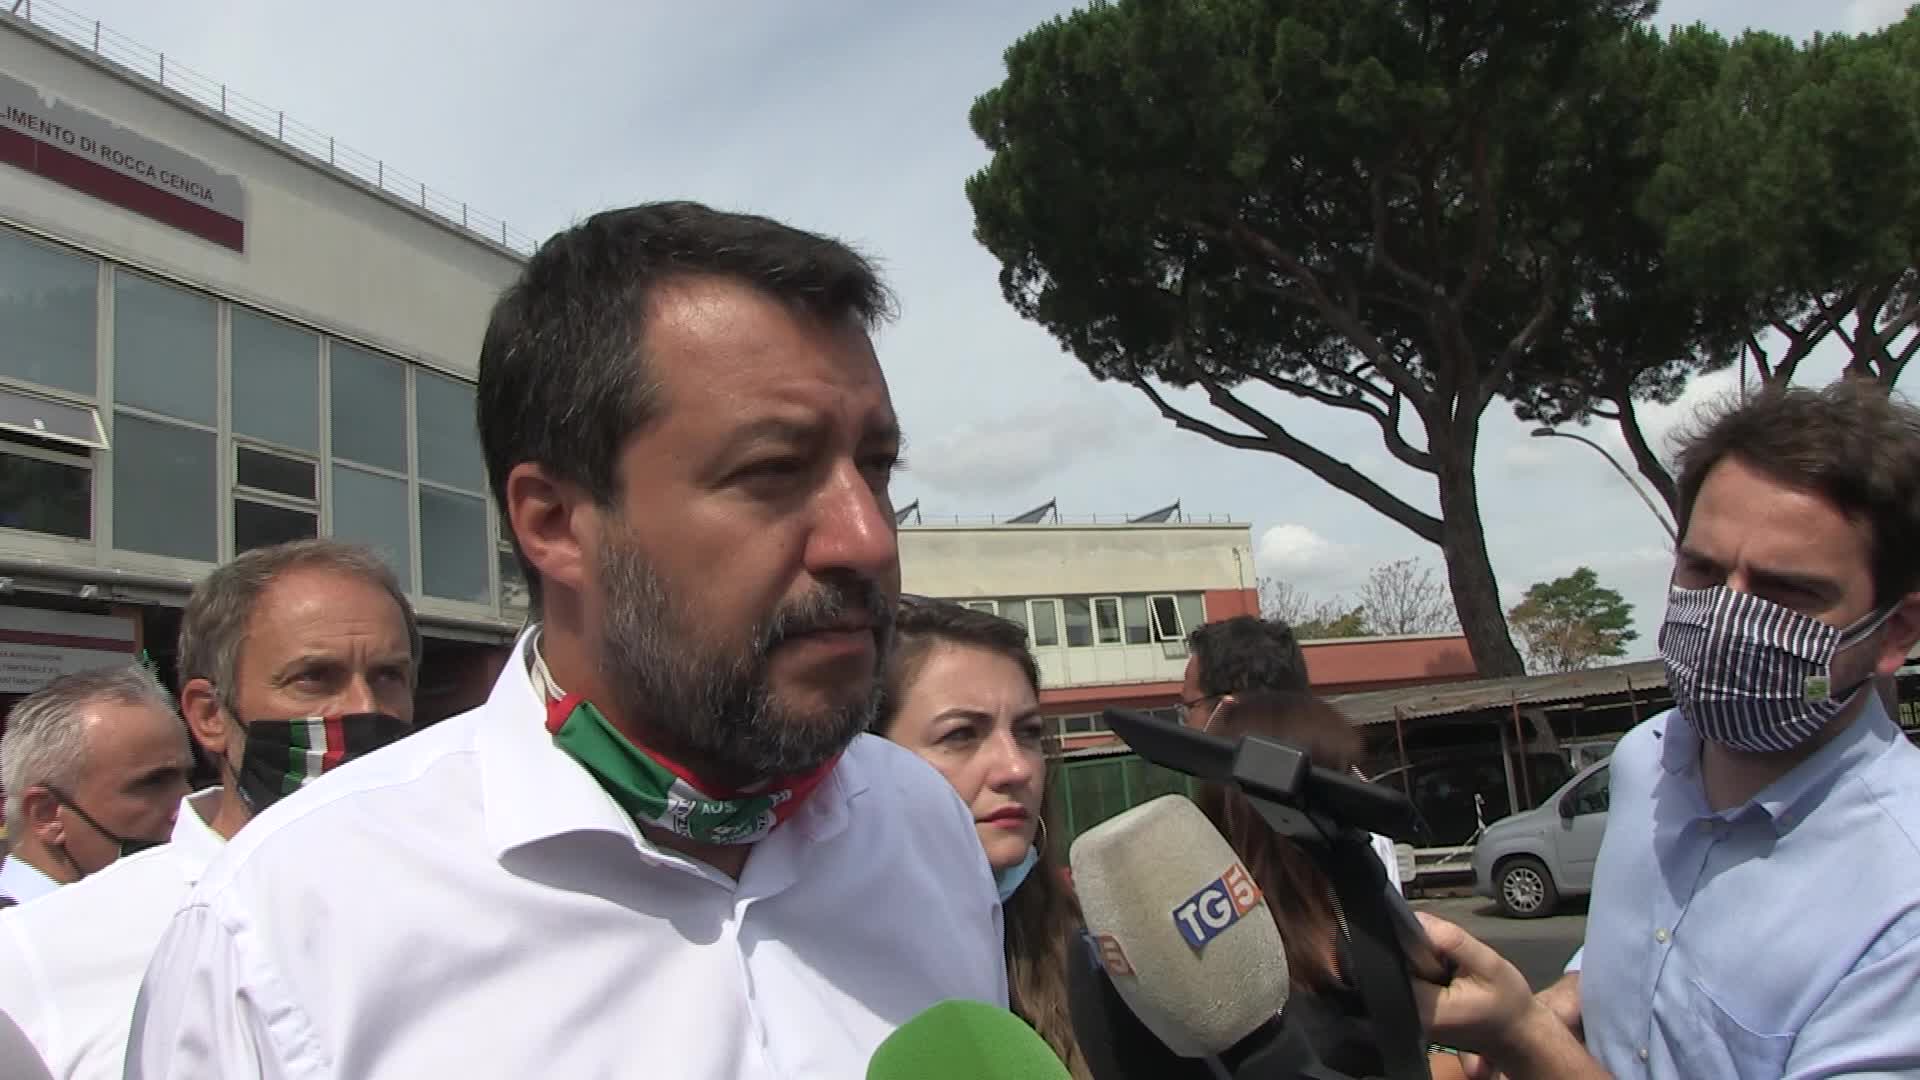 Autostrade, Salvini: "Da Cdm presa in giro, no revoca e mln pubblici spesi"